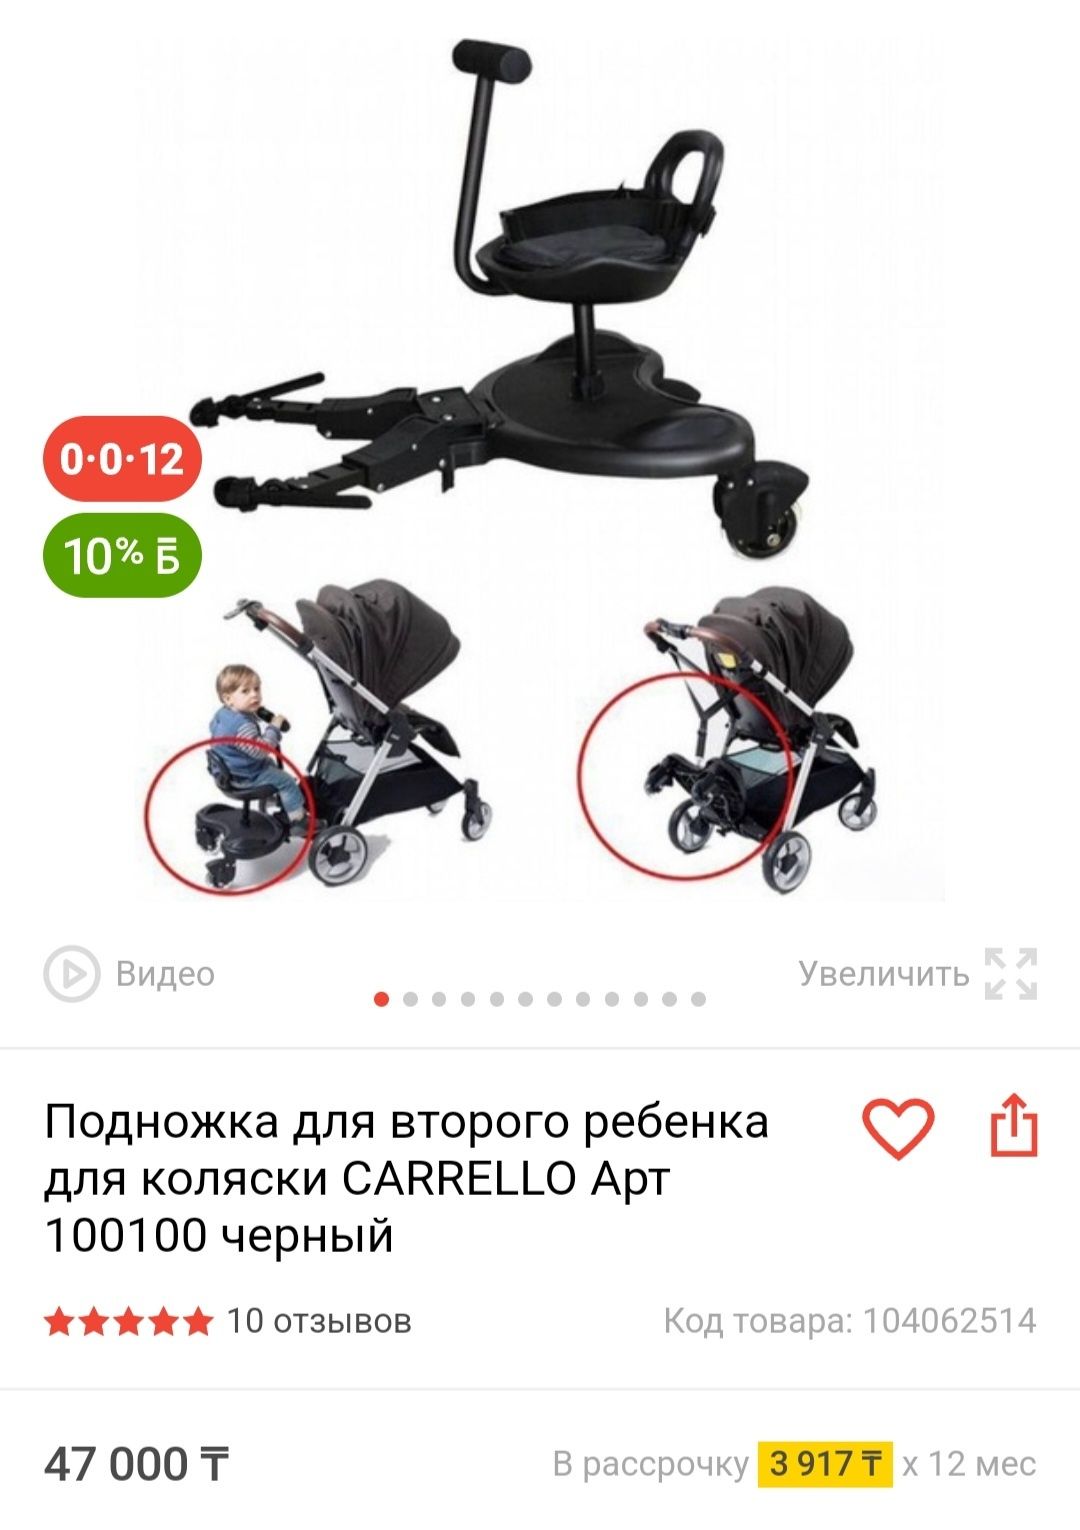 ПодножкаПодножка для коляски для второго ребенка